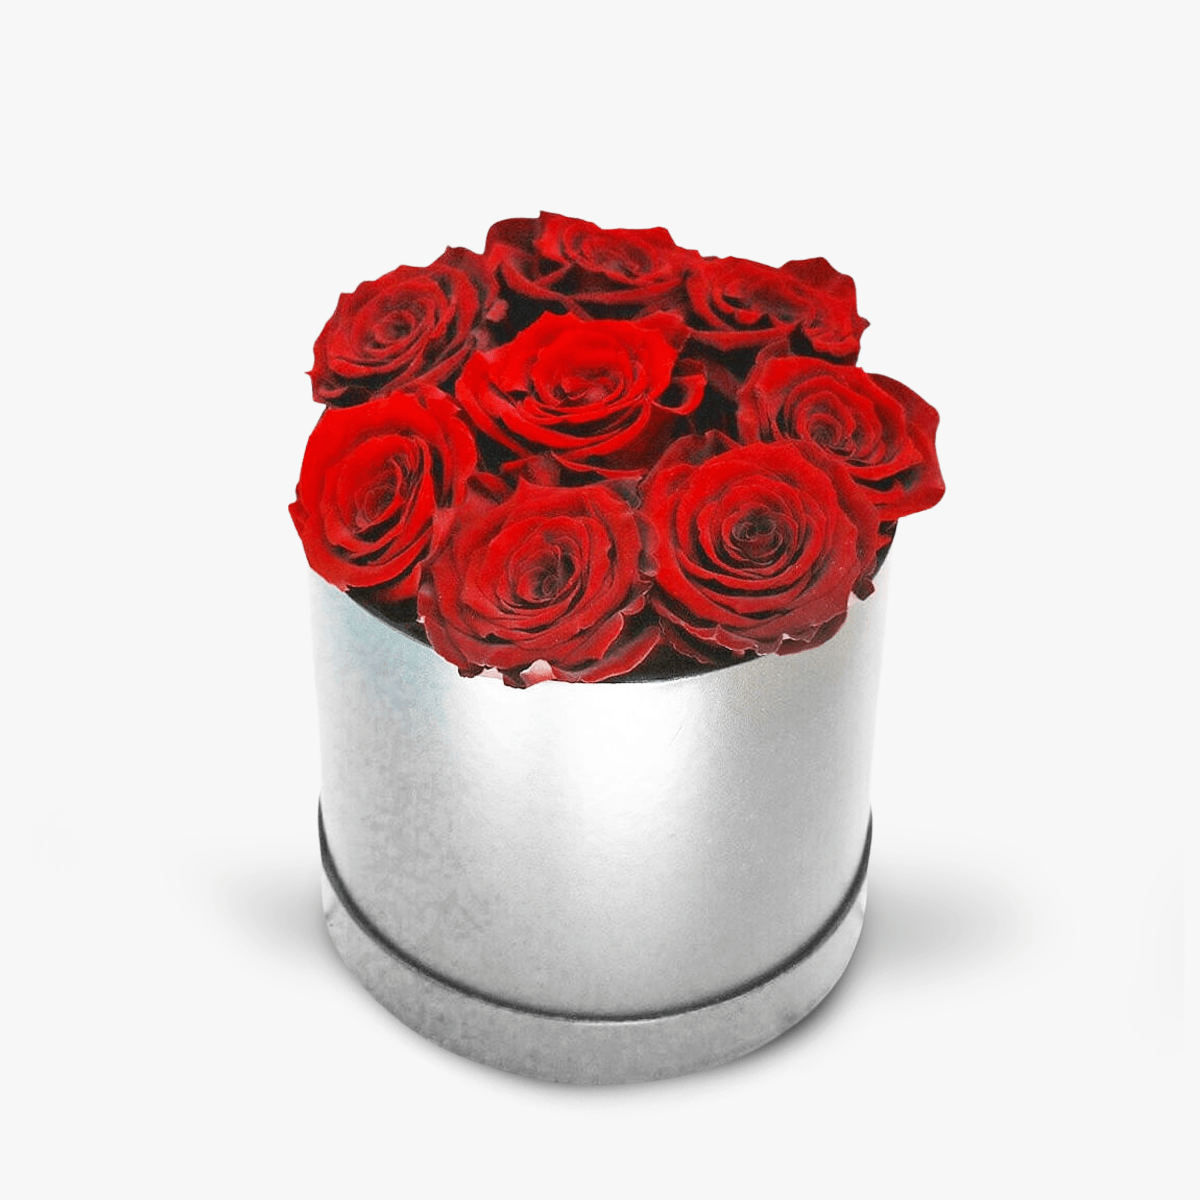 Cutie cu 9 trandafiri rosii, criogenati – Standard criogenati